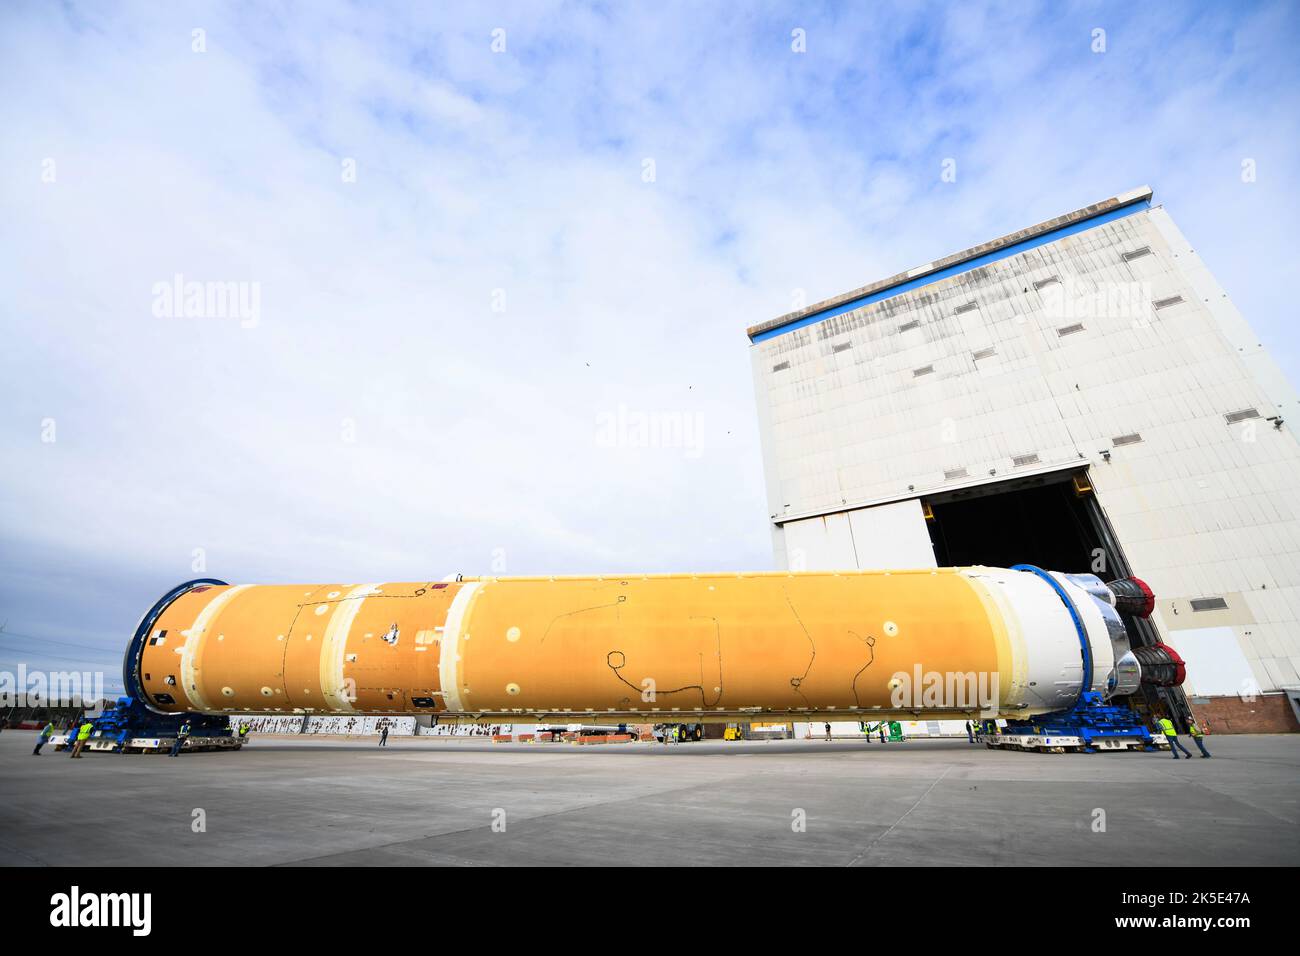 Die Teams der NASA-Montageanlage Michoud in New Orleans verlegten die Kernstufe, komplett mit allen vier RS-25-Triebwerken, für die NASA-Rakete zum Weltraumstartsystem (SLS), nach Gebäude 110, um am 1. Januar 2020 die Schiffsvorbereitungen abzuschließen. Die Kernstufe des SLS umfasst modernste Avionik, Antriebssysteme und zwei kolossale Treibstofftanks, die zusammen 733.000 Gallonen flüssigen Sauerstoff und flüssigen Wasserstoff enthalten, um seine vier RS-25-Motoren anzutreiben. Die abgeschlossene Etappe unterstützt die erste Artemis-Mission zum Mond in einer optimierten Version eines Originalbildes der NASA. Quelle: NASA/JGuidry Stockfoto